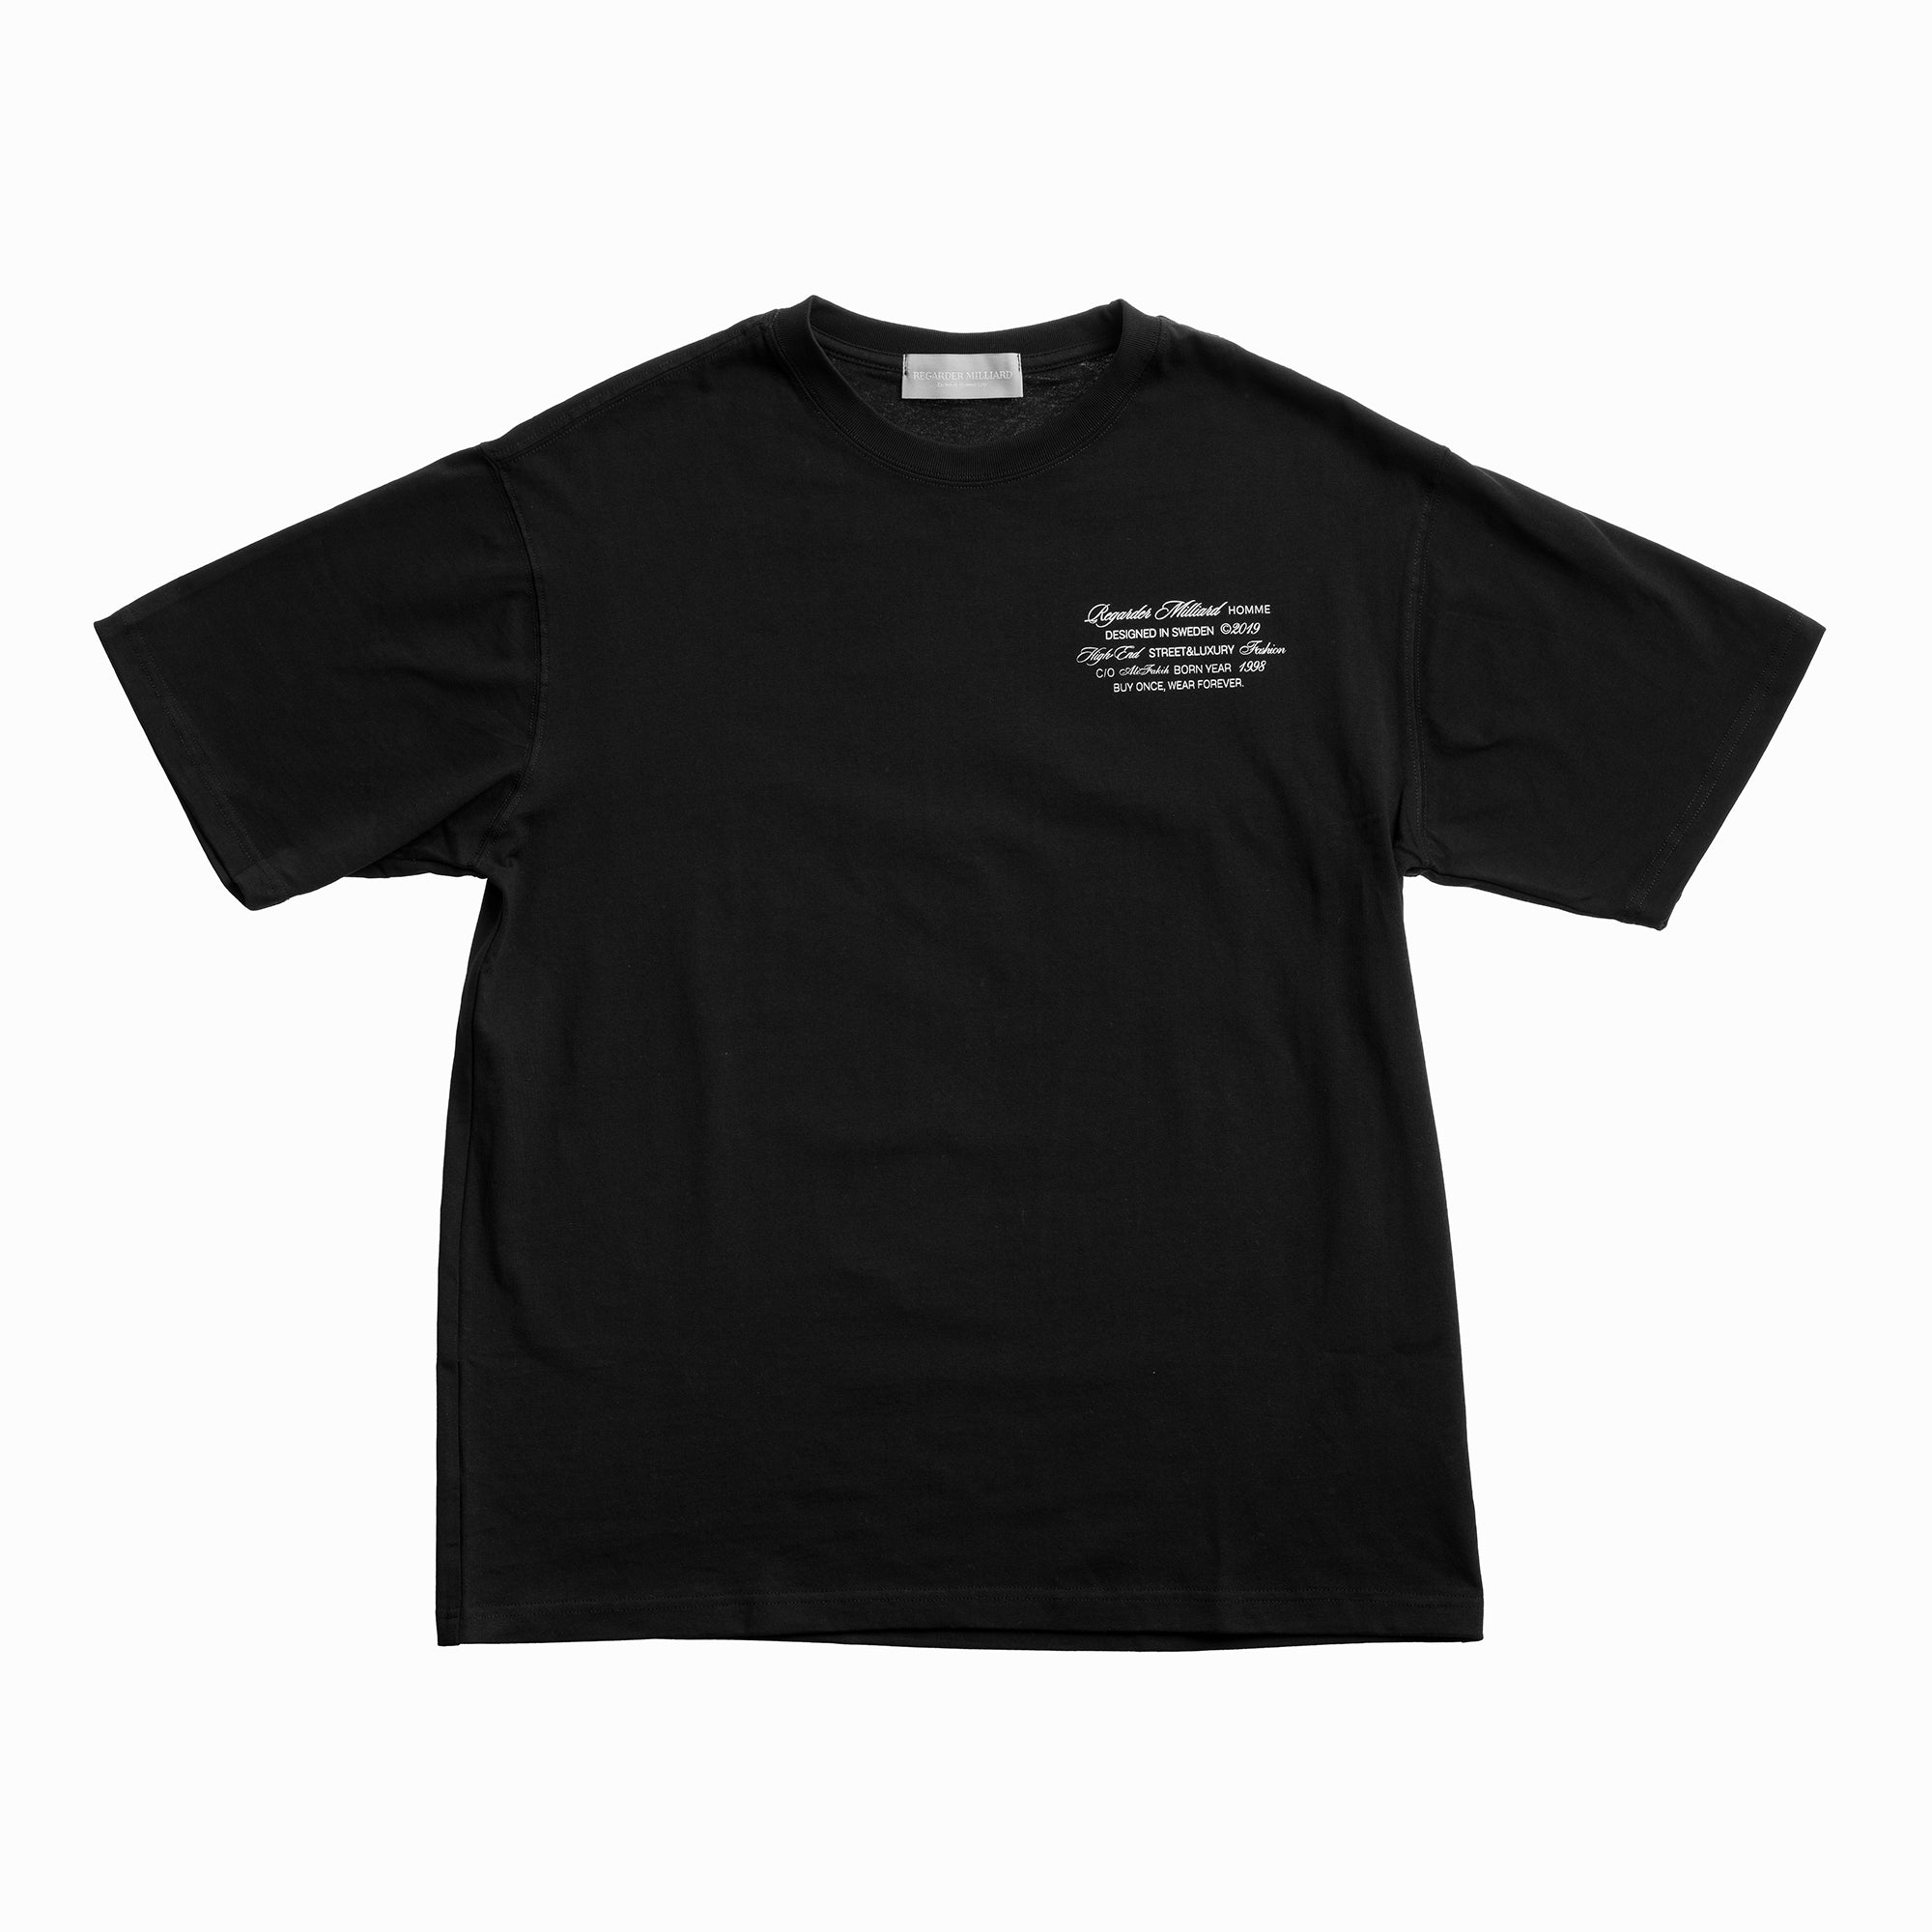 Stewart Enslow Summer Shirt- Black Floral